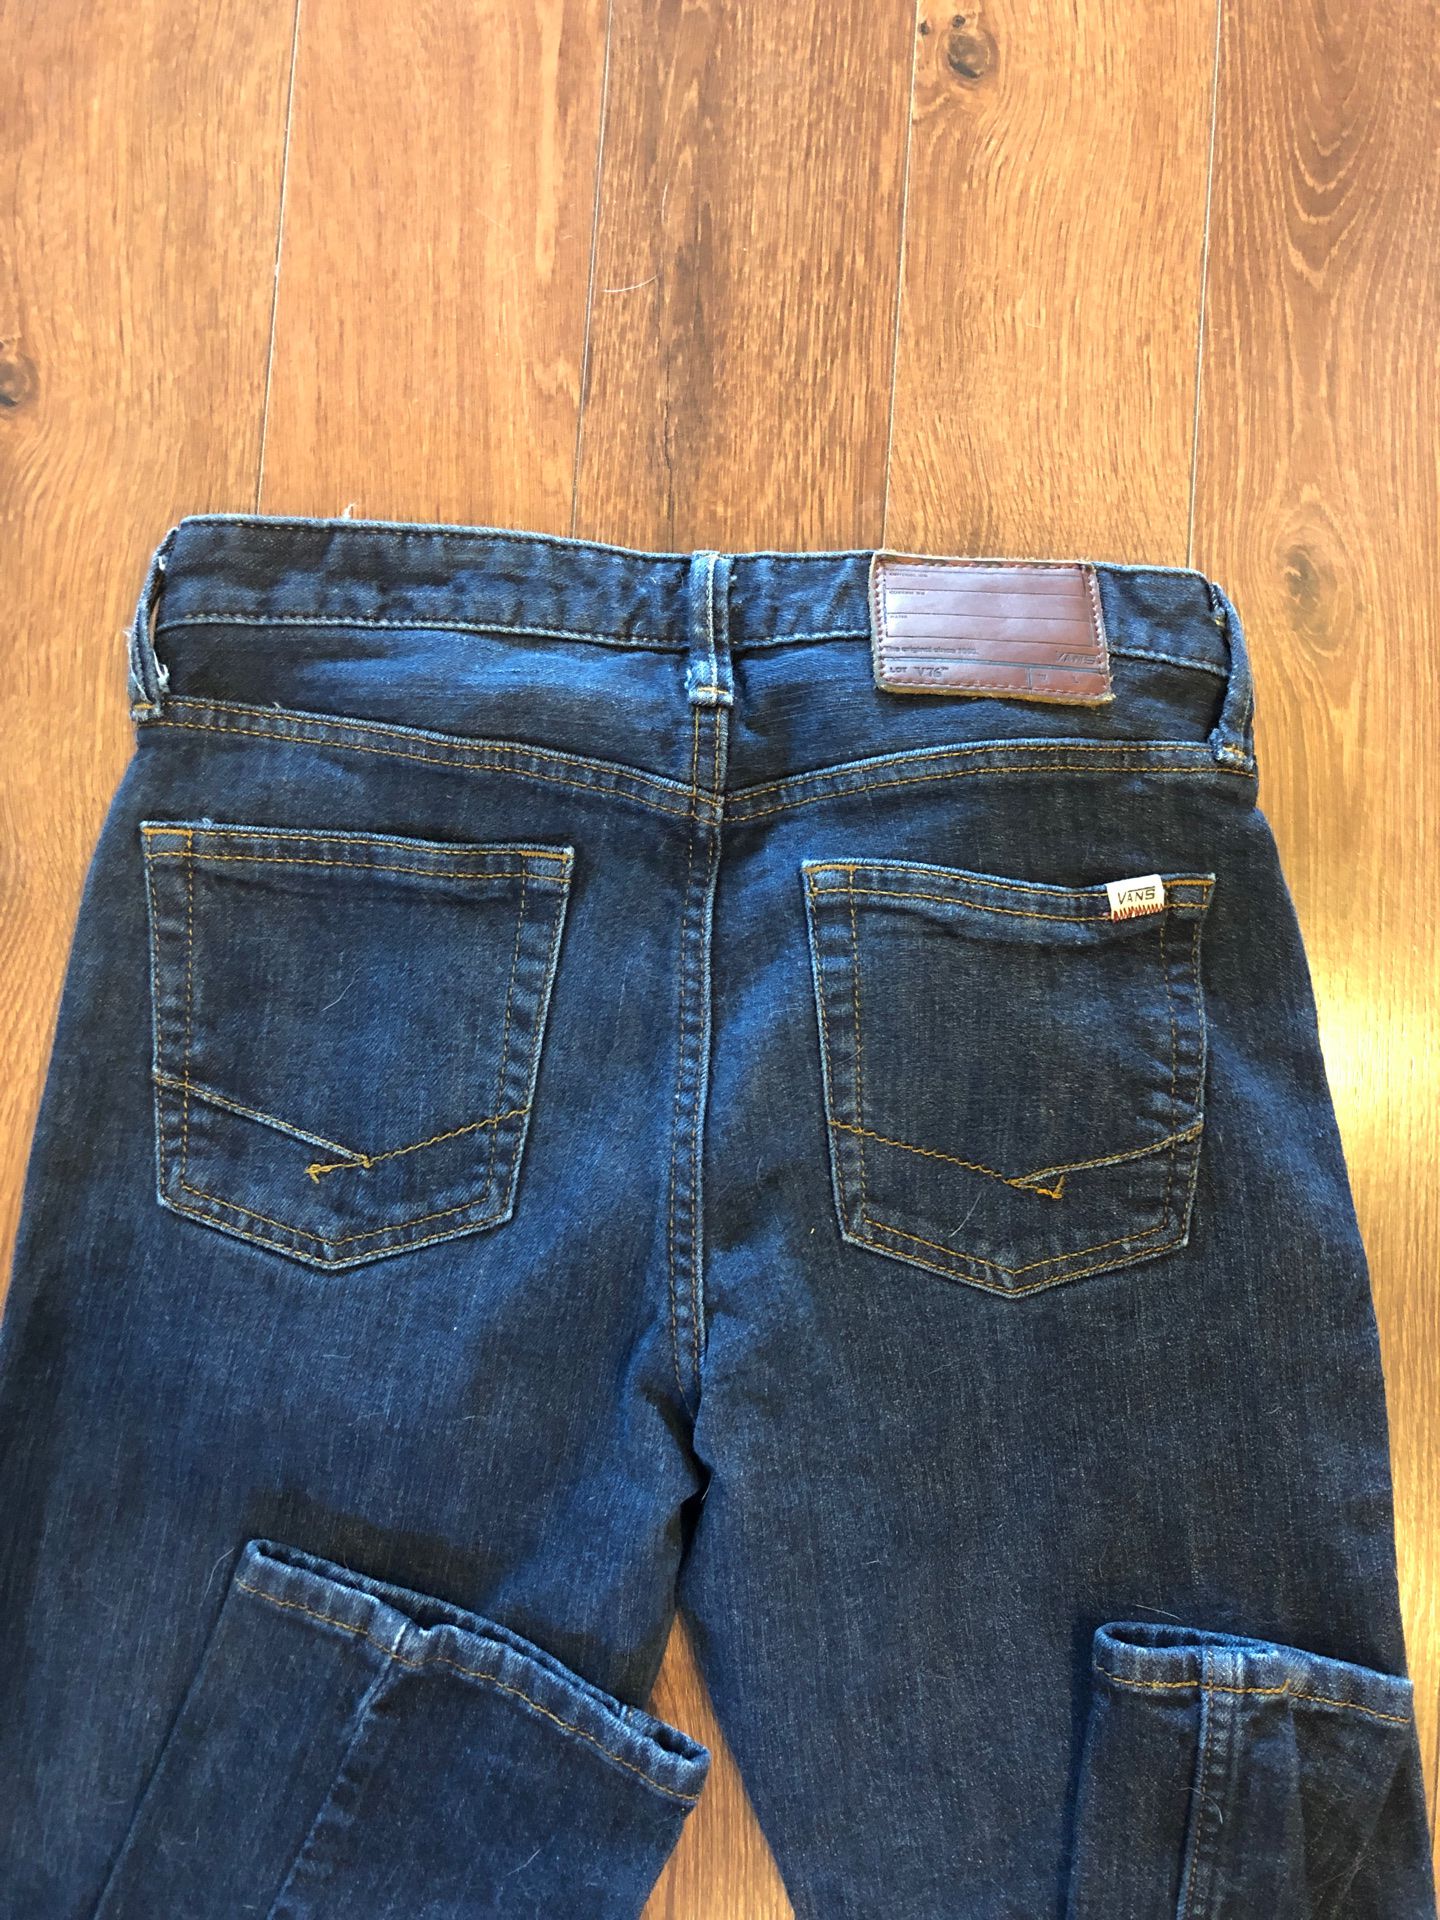 Men’s Vans jeans - v76 skinny jeans - 30x32 - like new